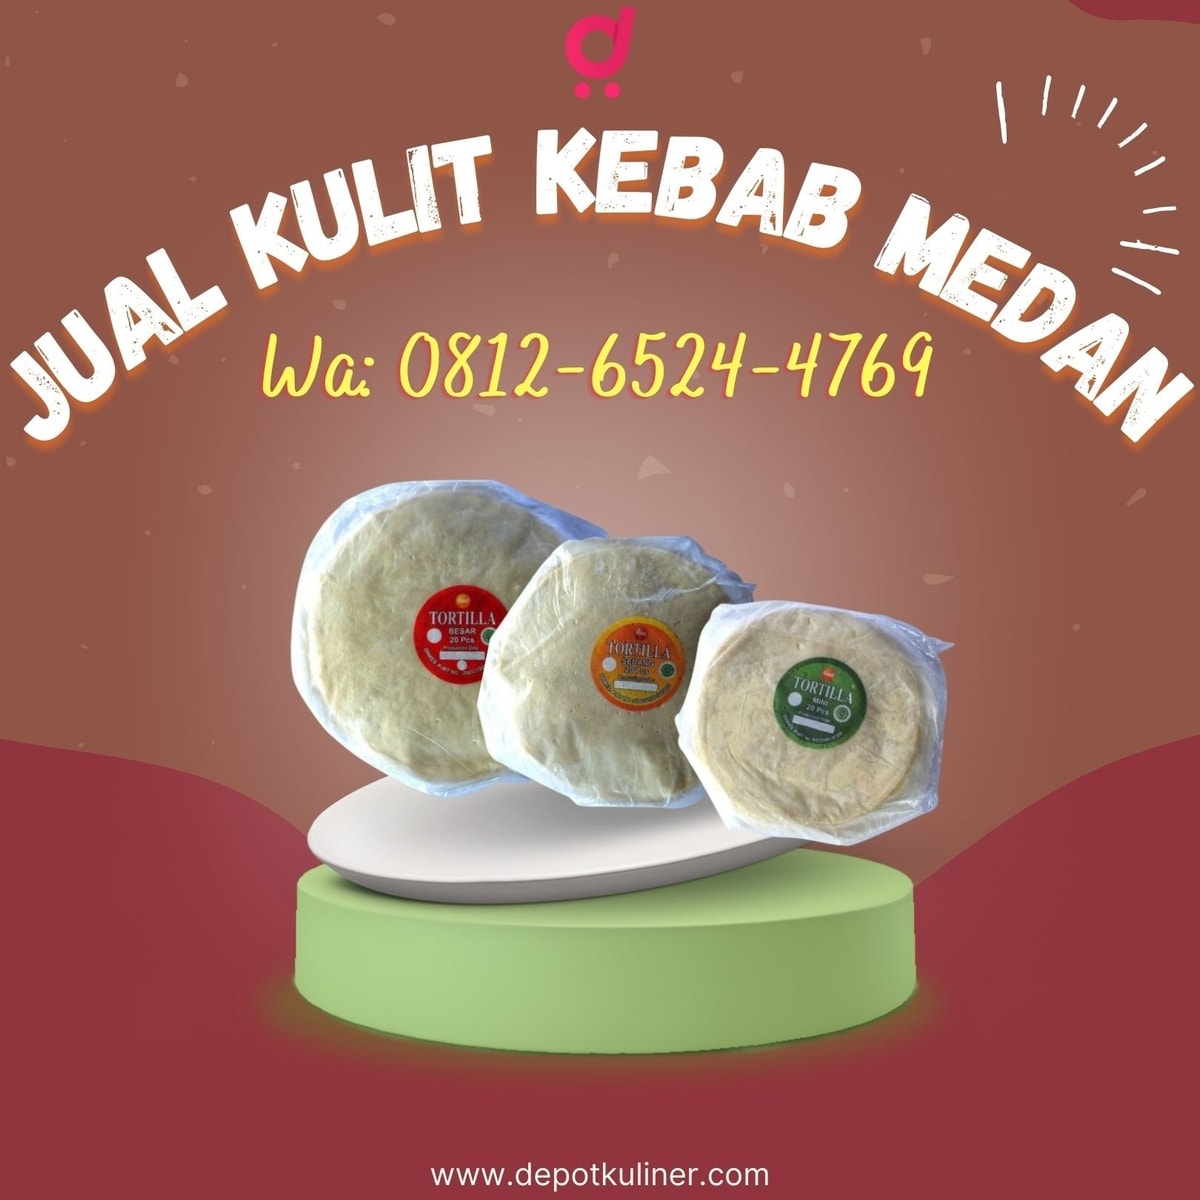 HARGA DISTRIBUTOR, Call 0812-6524-4769, Jual Kulit Kebab Medan